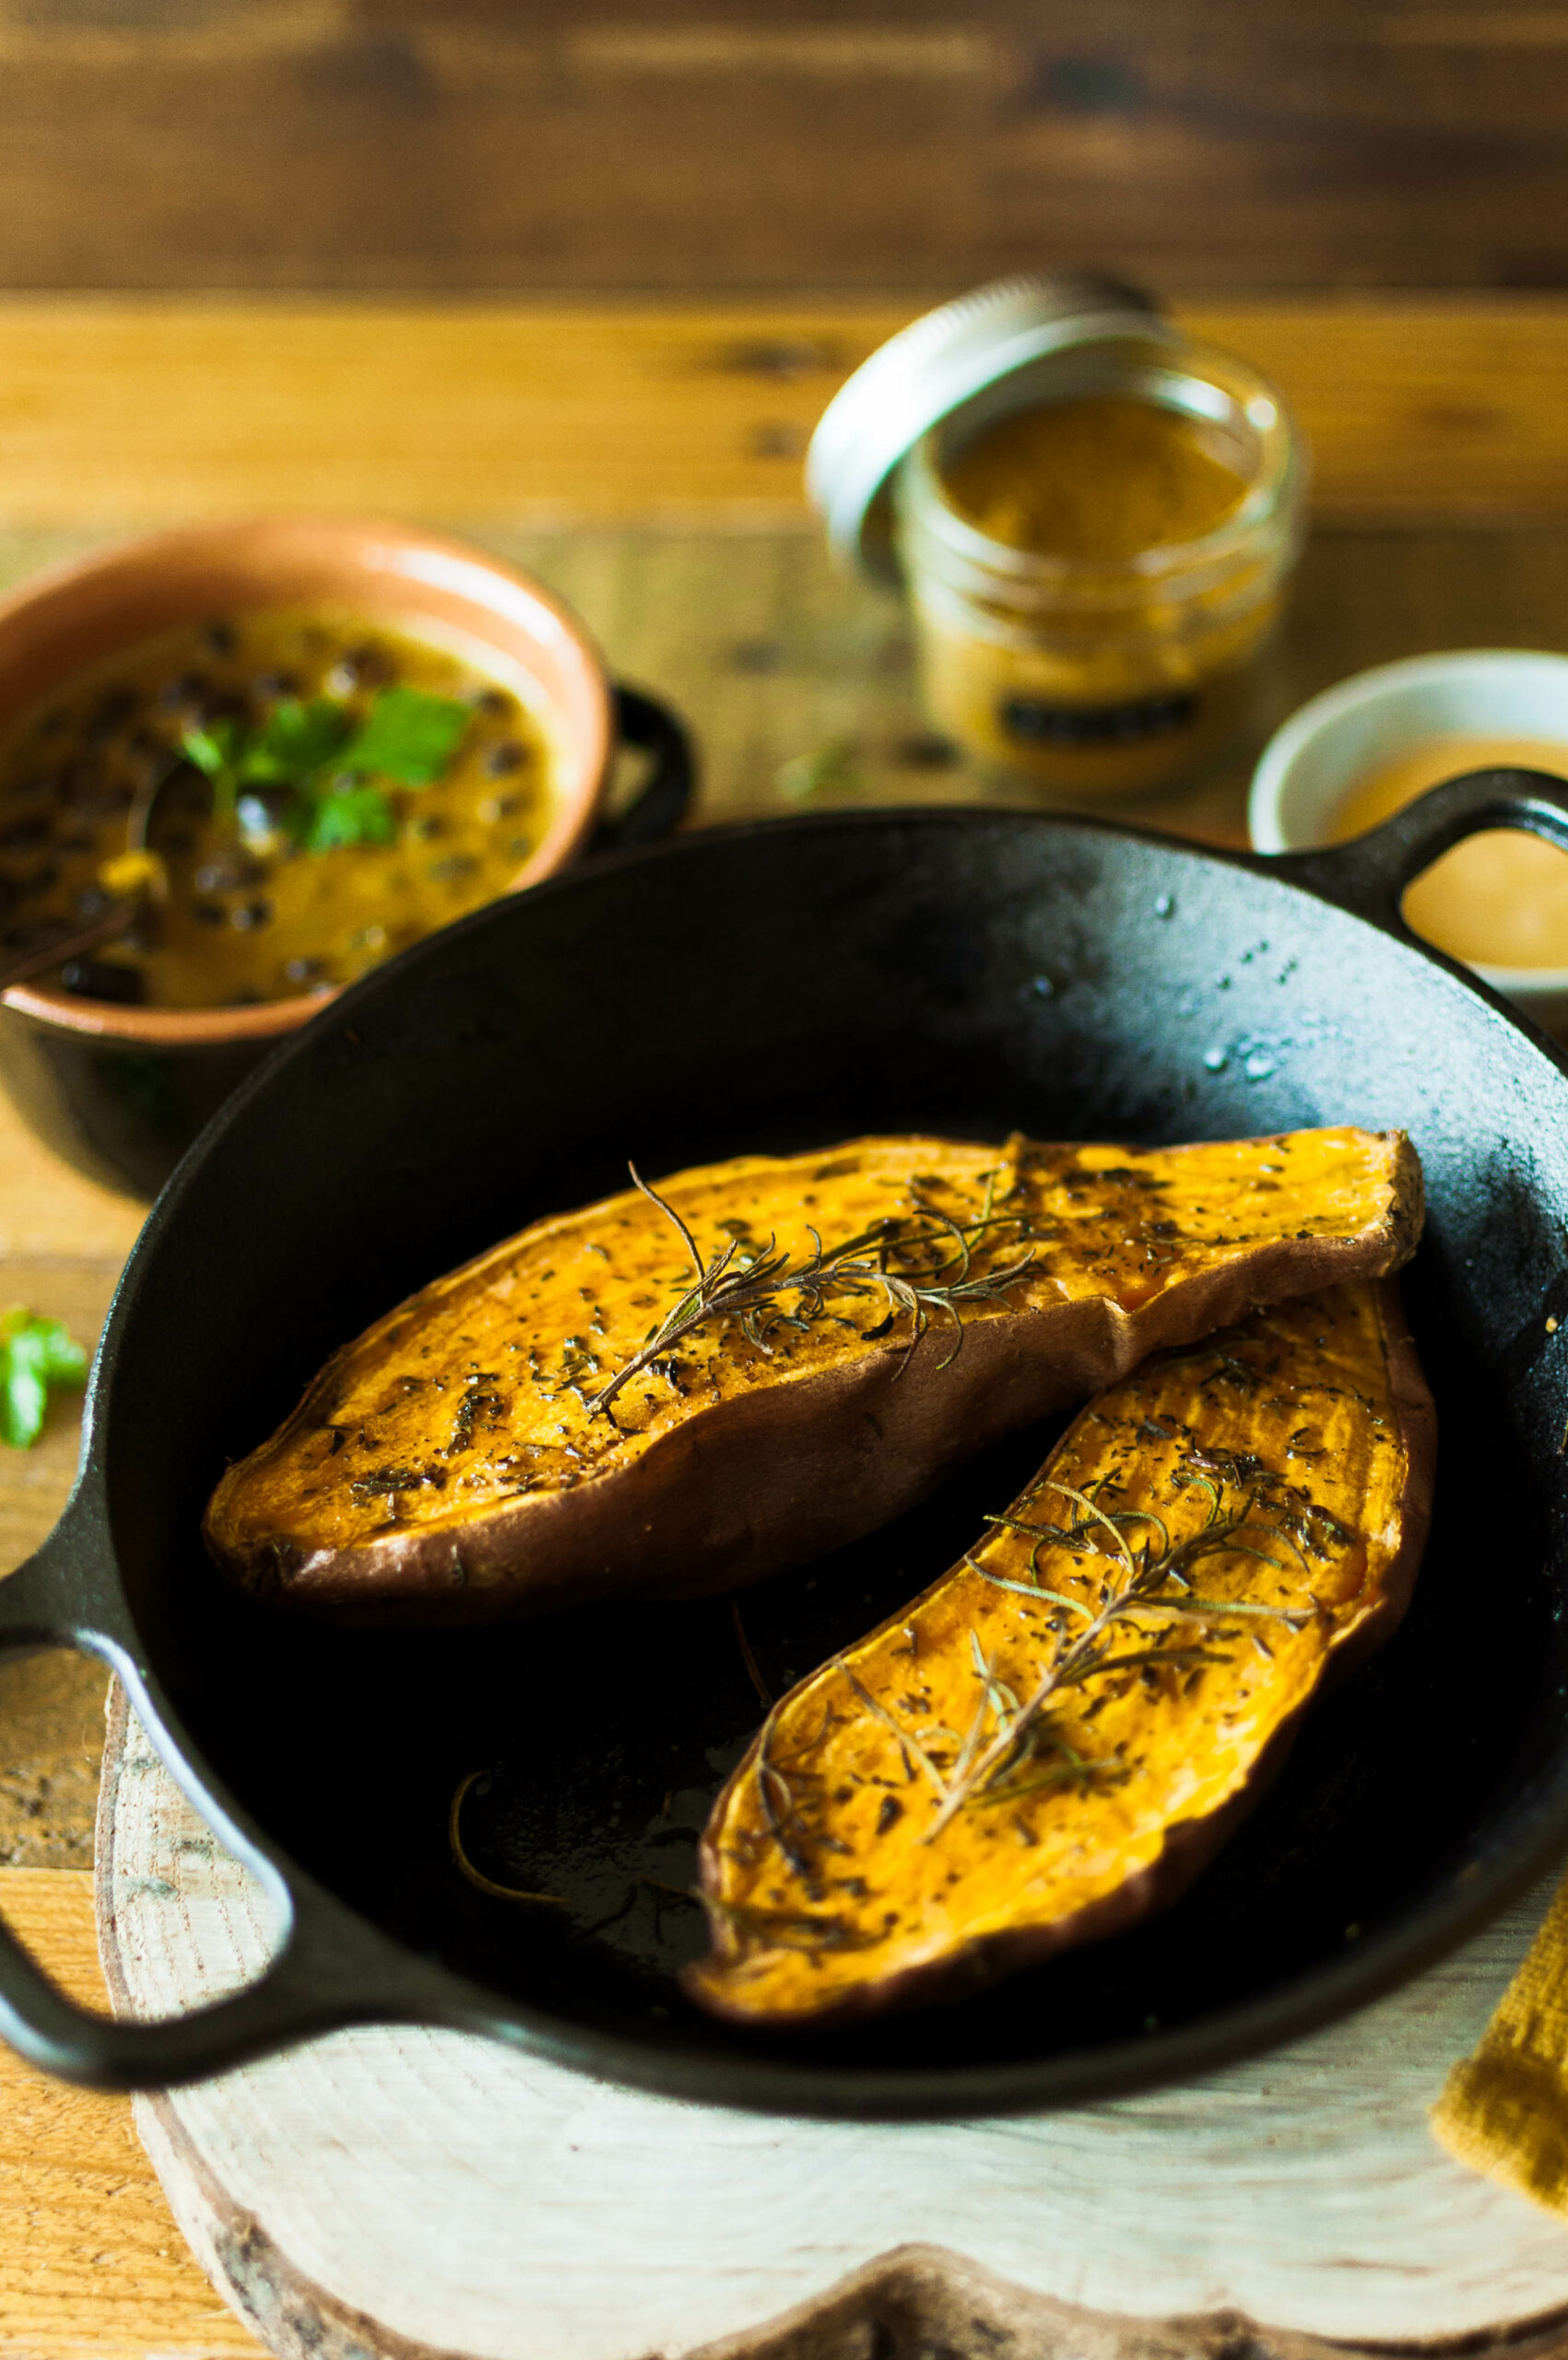 Patates douces rôties et haricots noirs au curry